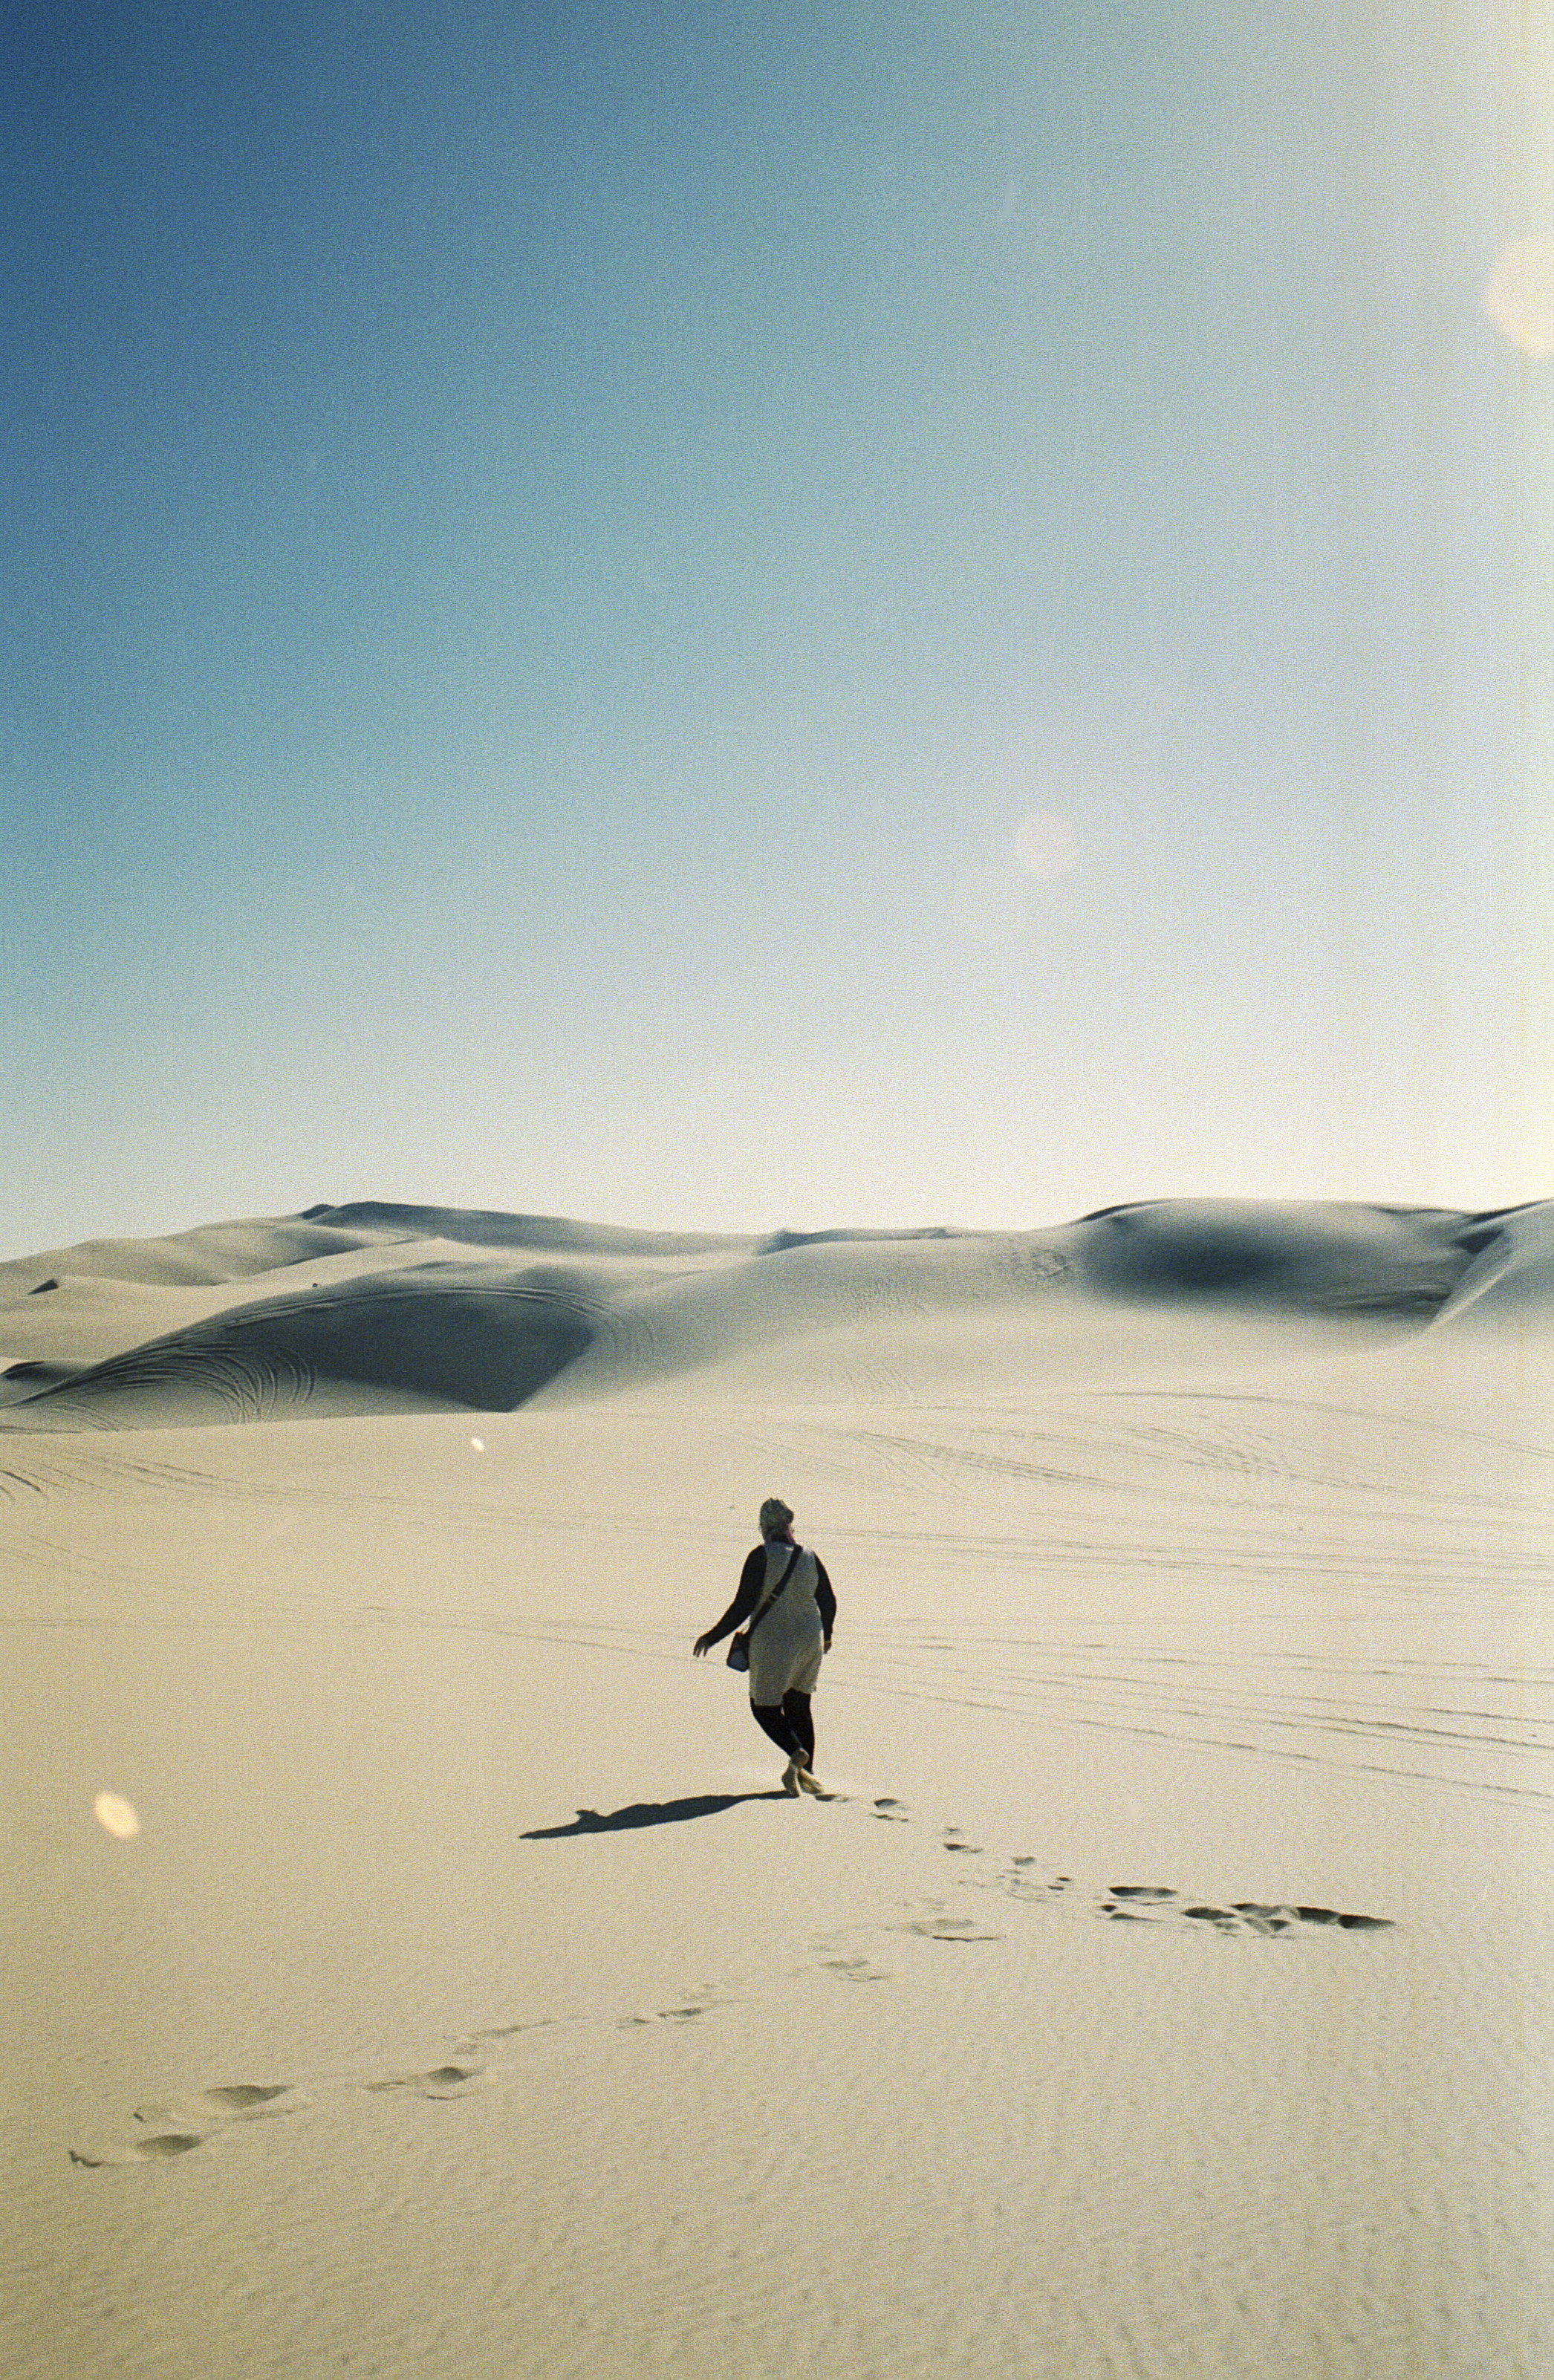 woman walks through the dessert sands